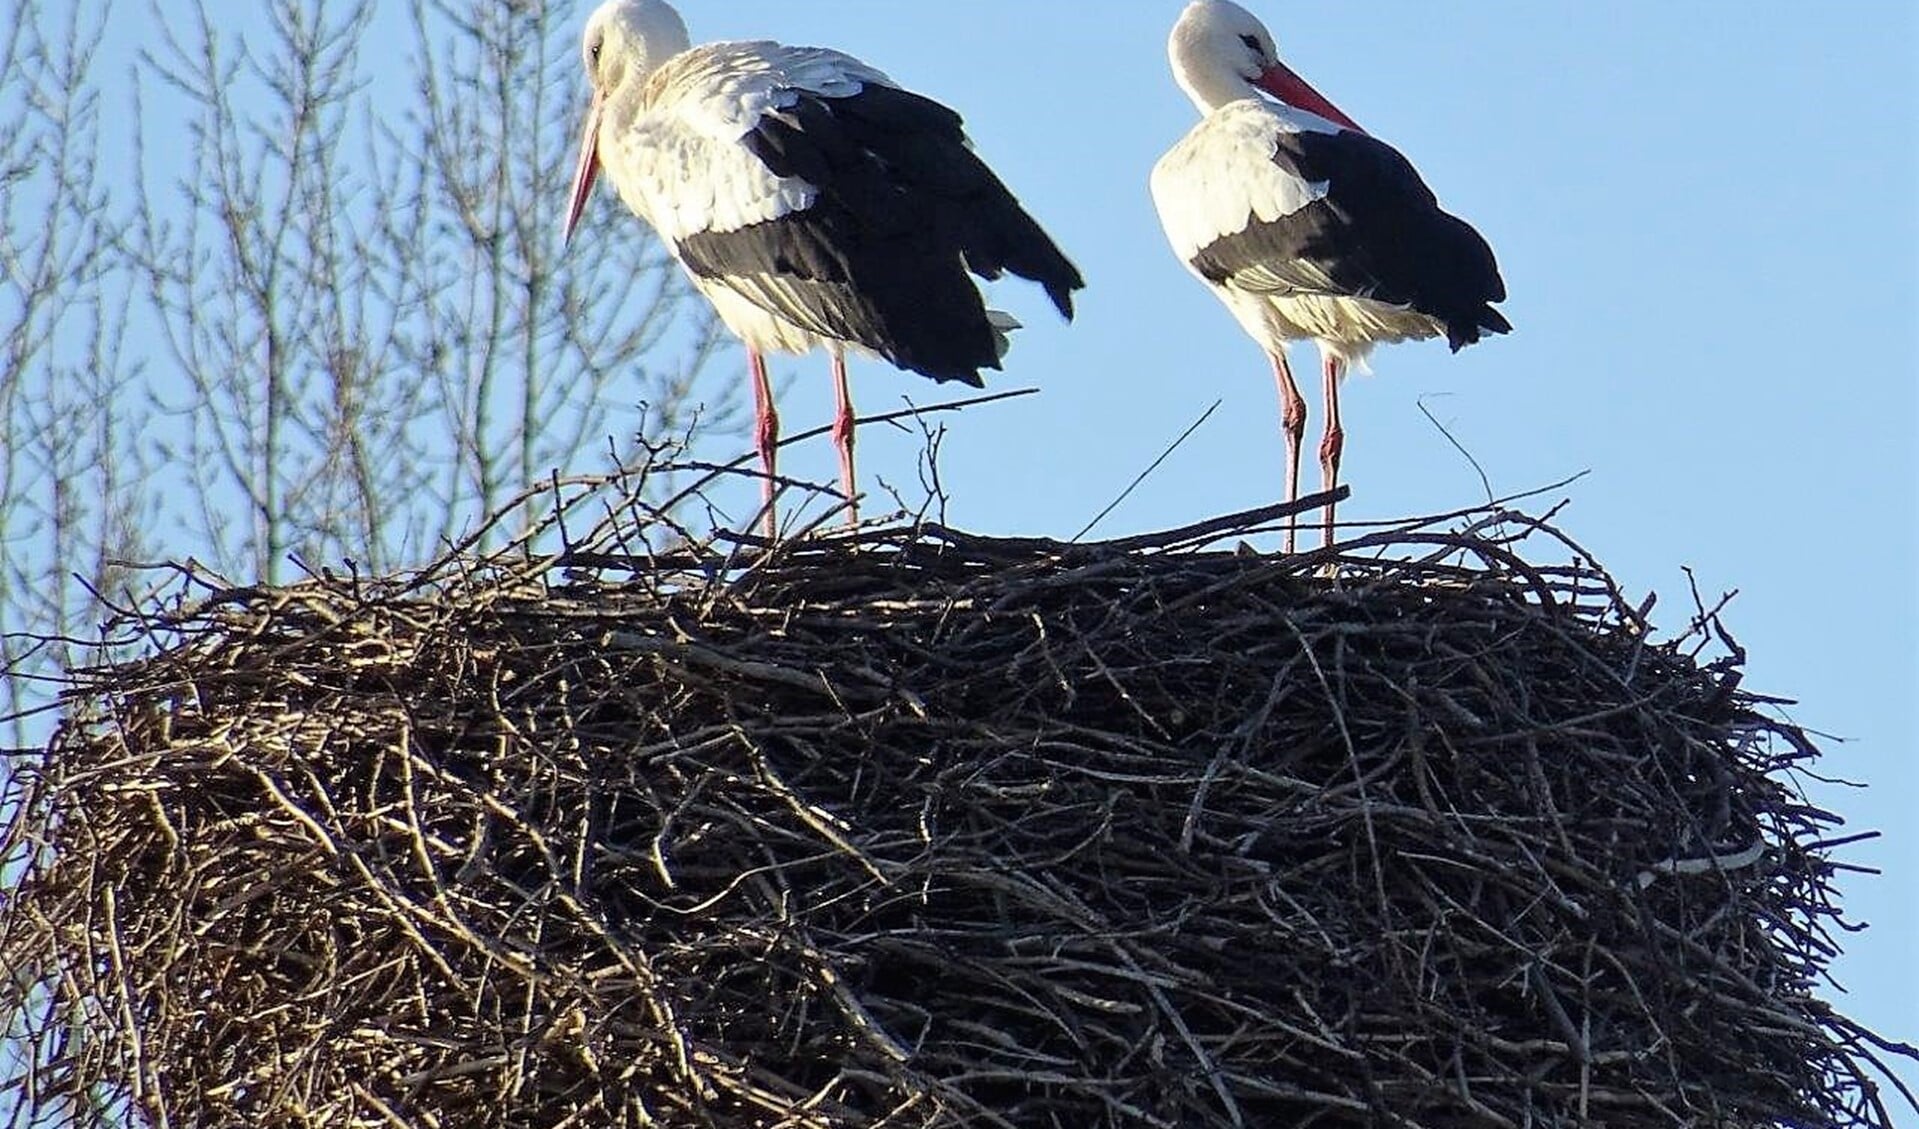 De ooievaars zijn weer op het nest neergestreken (foto: Ap de Heus).